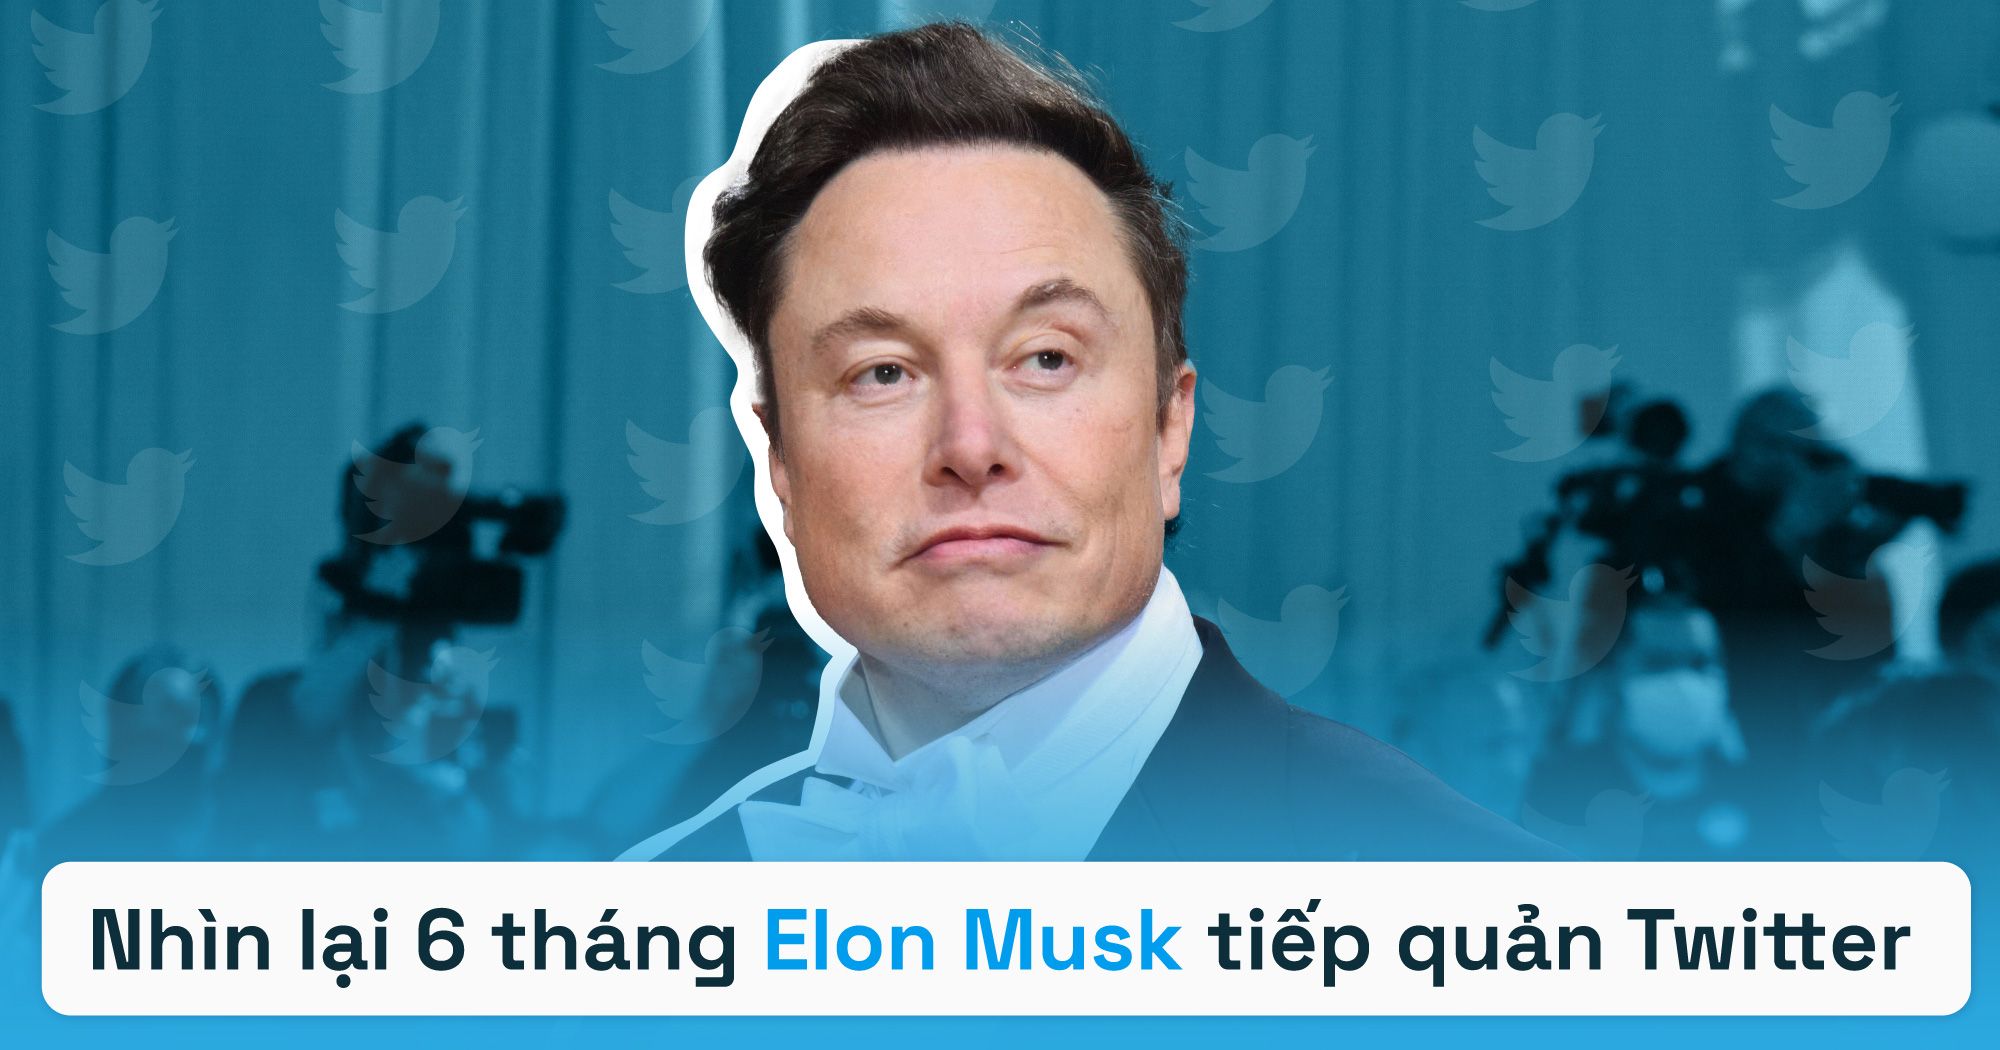 Nhìn lại 6 tháng Elon Musk tiếp quản Twitter: Sa thải hàng loạt nhân sự, thay đổi trải nghiệm người dùng và những câu hỏi chưa có lời giải trong tương lai